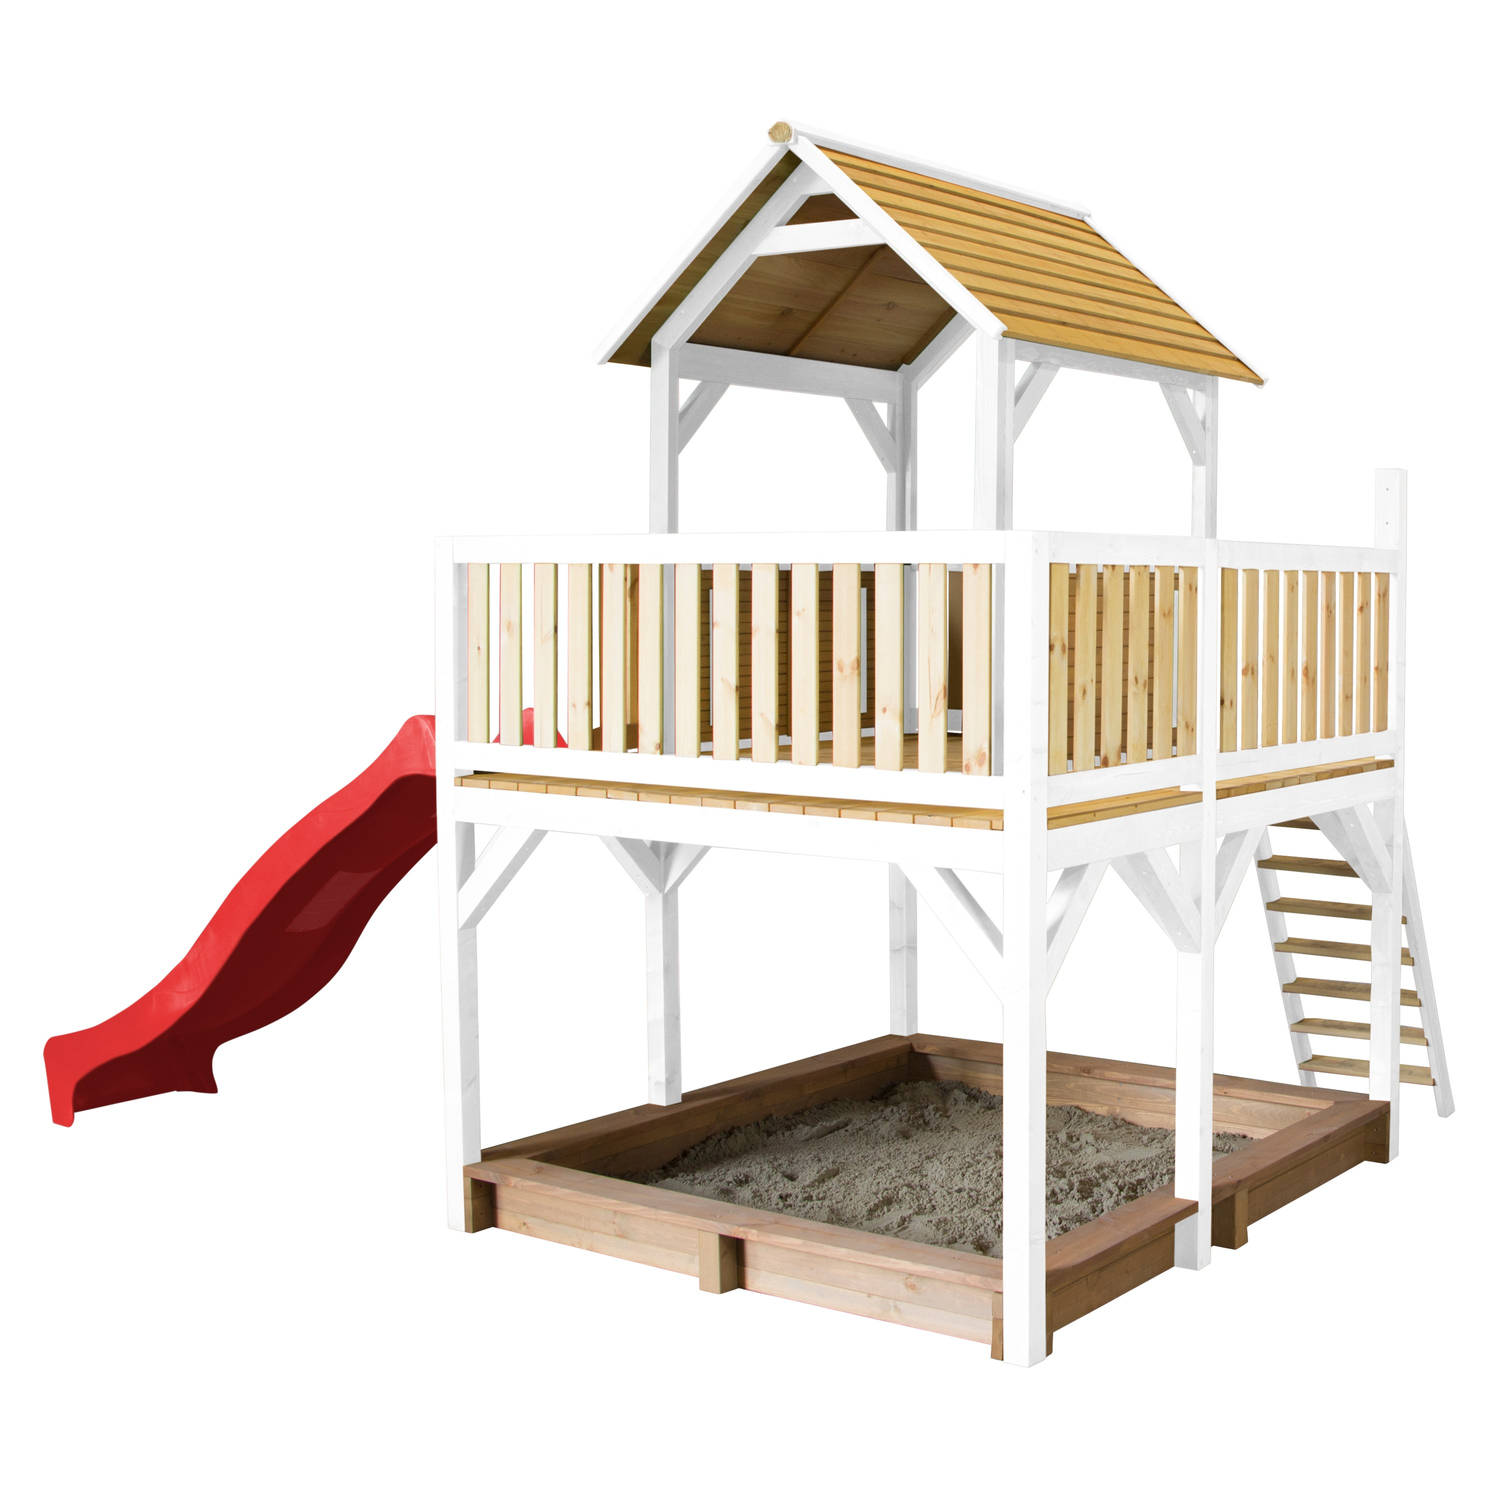 AXI Atka Speelhuis op palen, zandbak & rode glijbaan Speelhuisje voor de tuin / buiten in bruin & wit van FSC hout